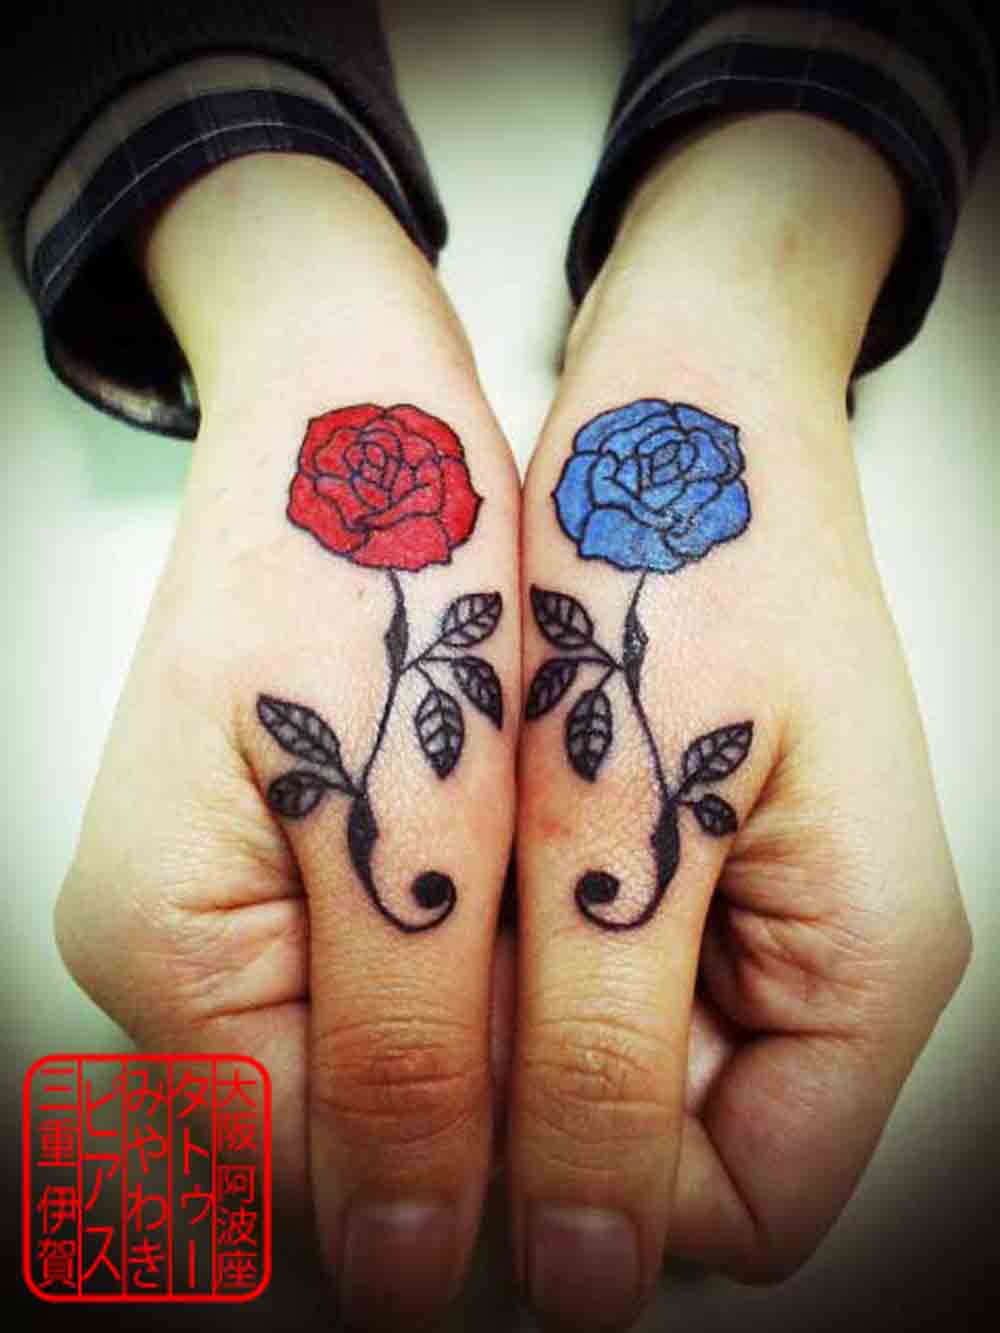 親指延長上の手のひらに右は赤、左は青の薔薇